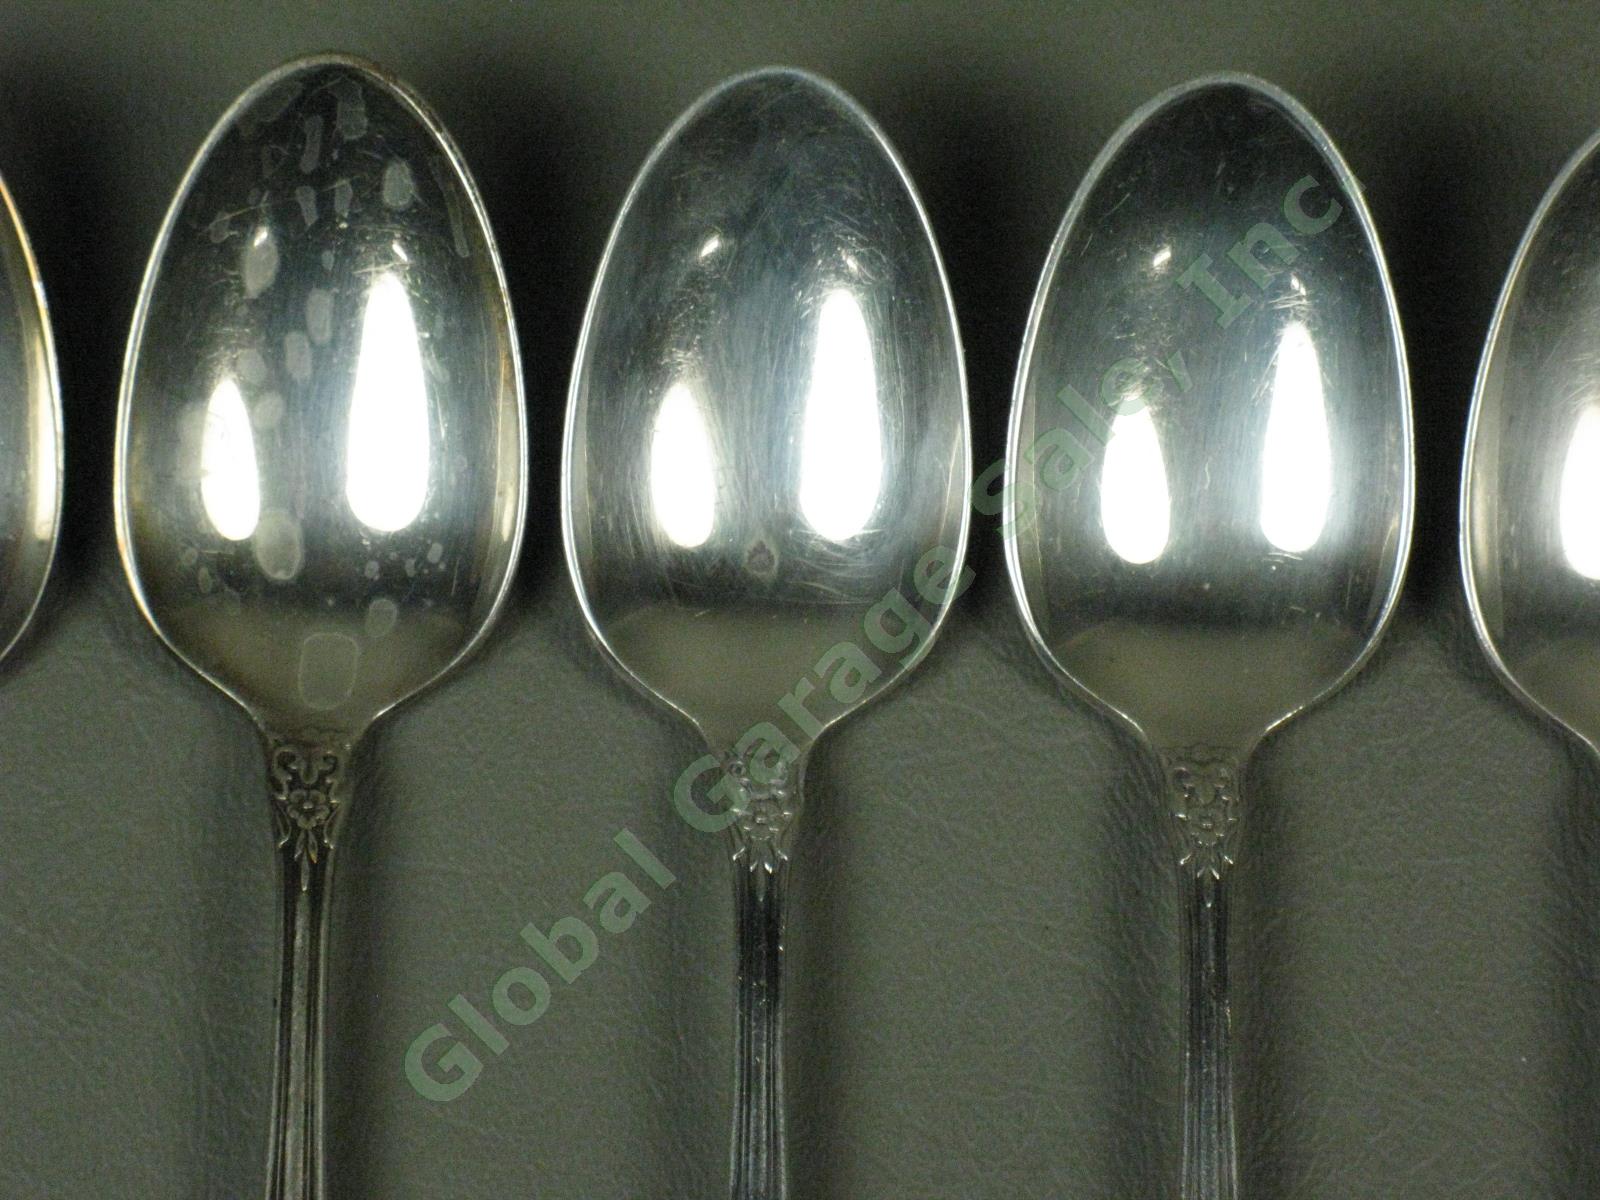 7 State House Inaugural Sterling Silver Teaspoons Spoons Silverware Flatware Set 1